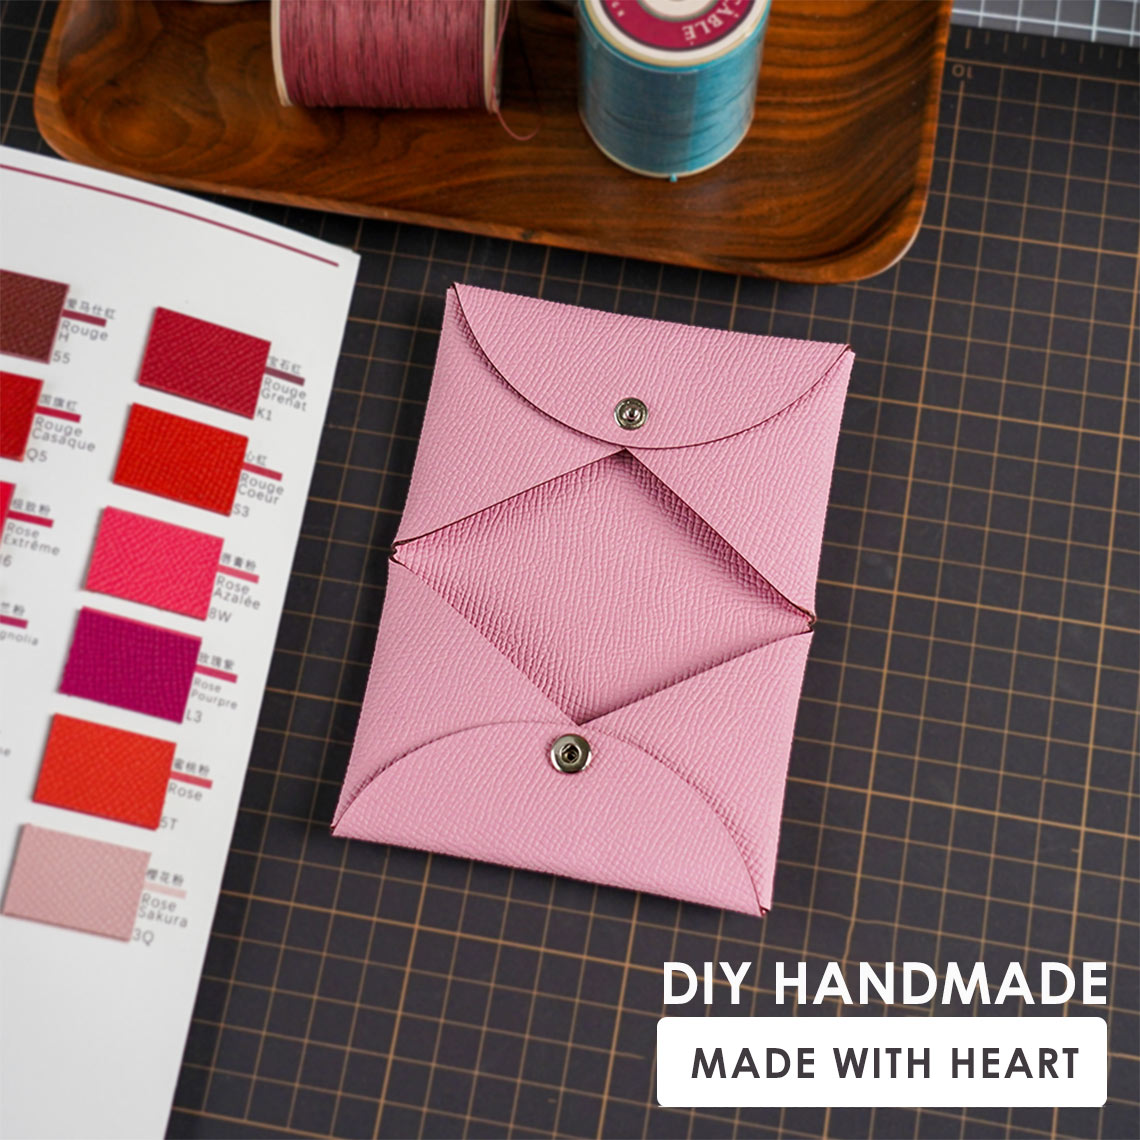 Epsom Leather Inspired Calvi Card Holder DIY Kit